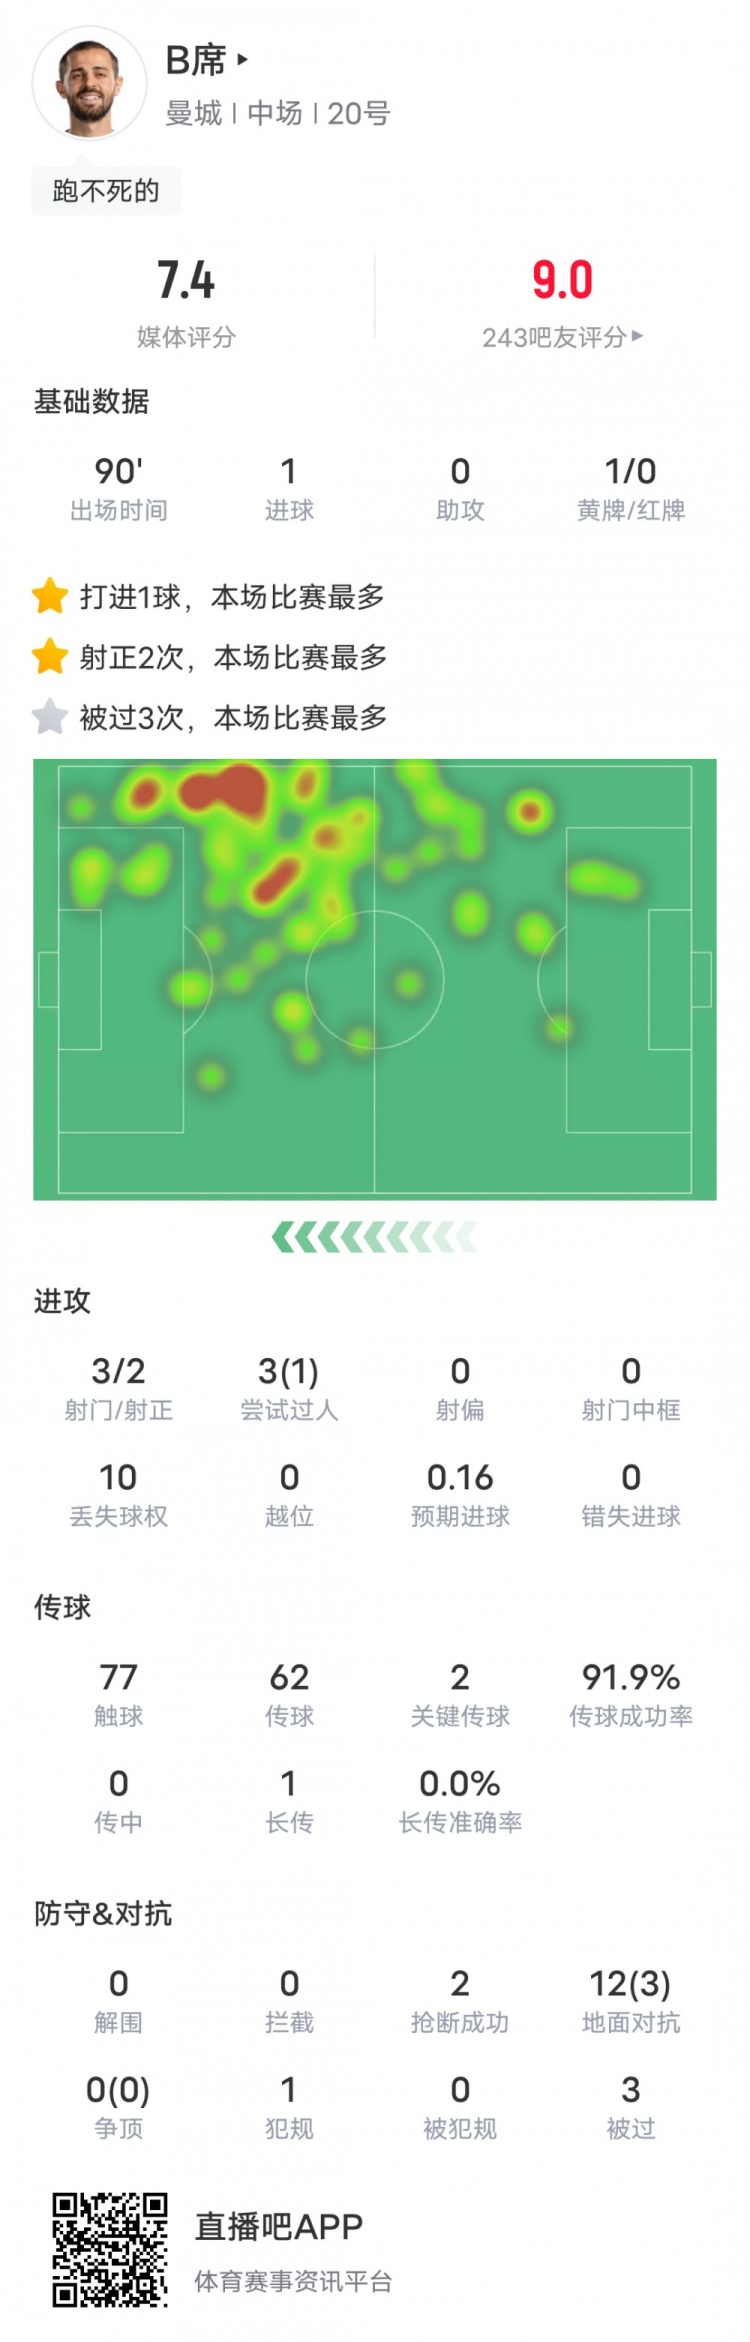 9博体育下载app：B席本场比赛数据：1进球2关键传球&传球成功率91.9%，评分7.4(图1)